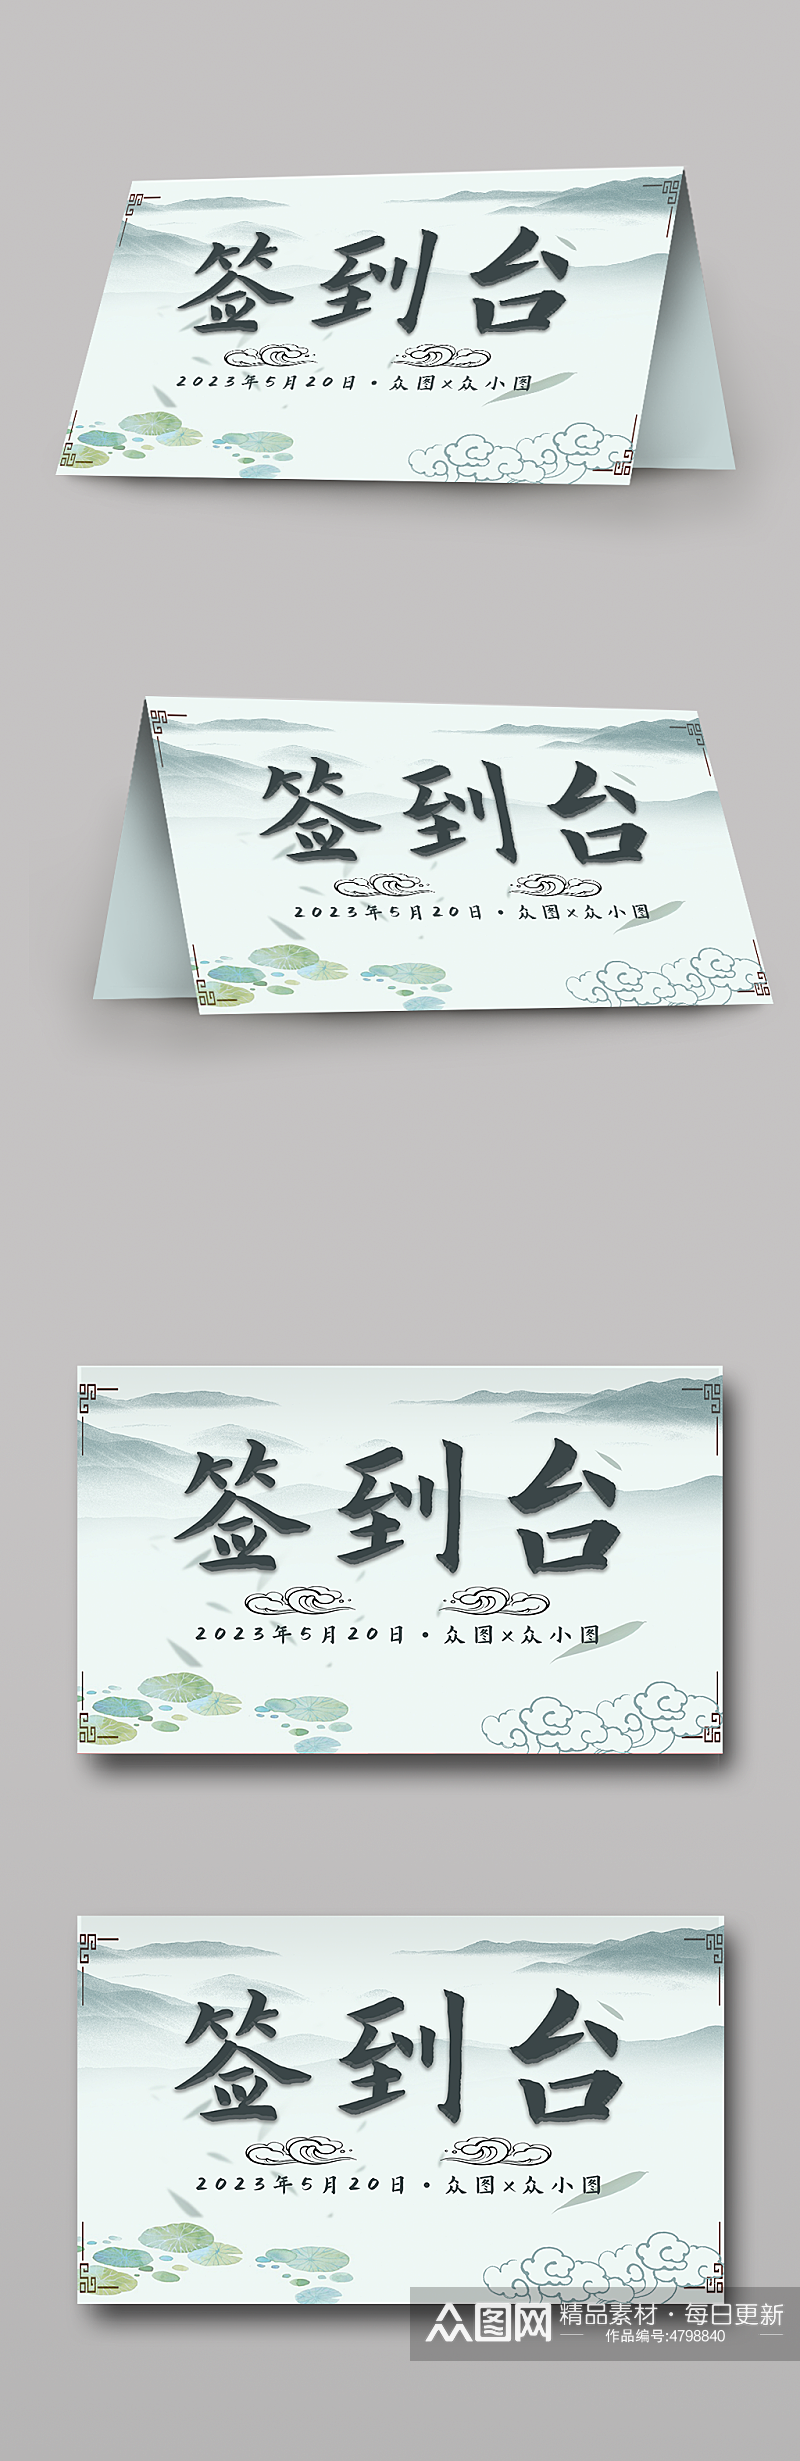 中国风婚礼签到台桌卡台卡素材